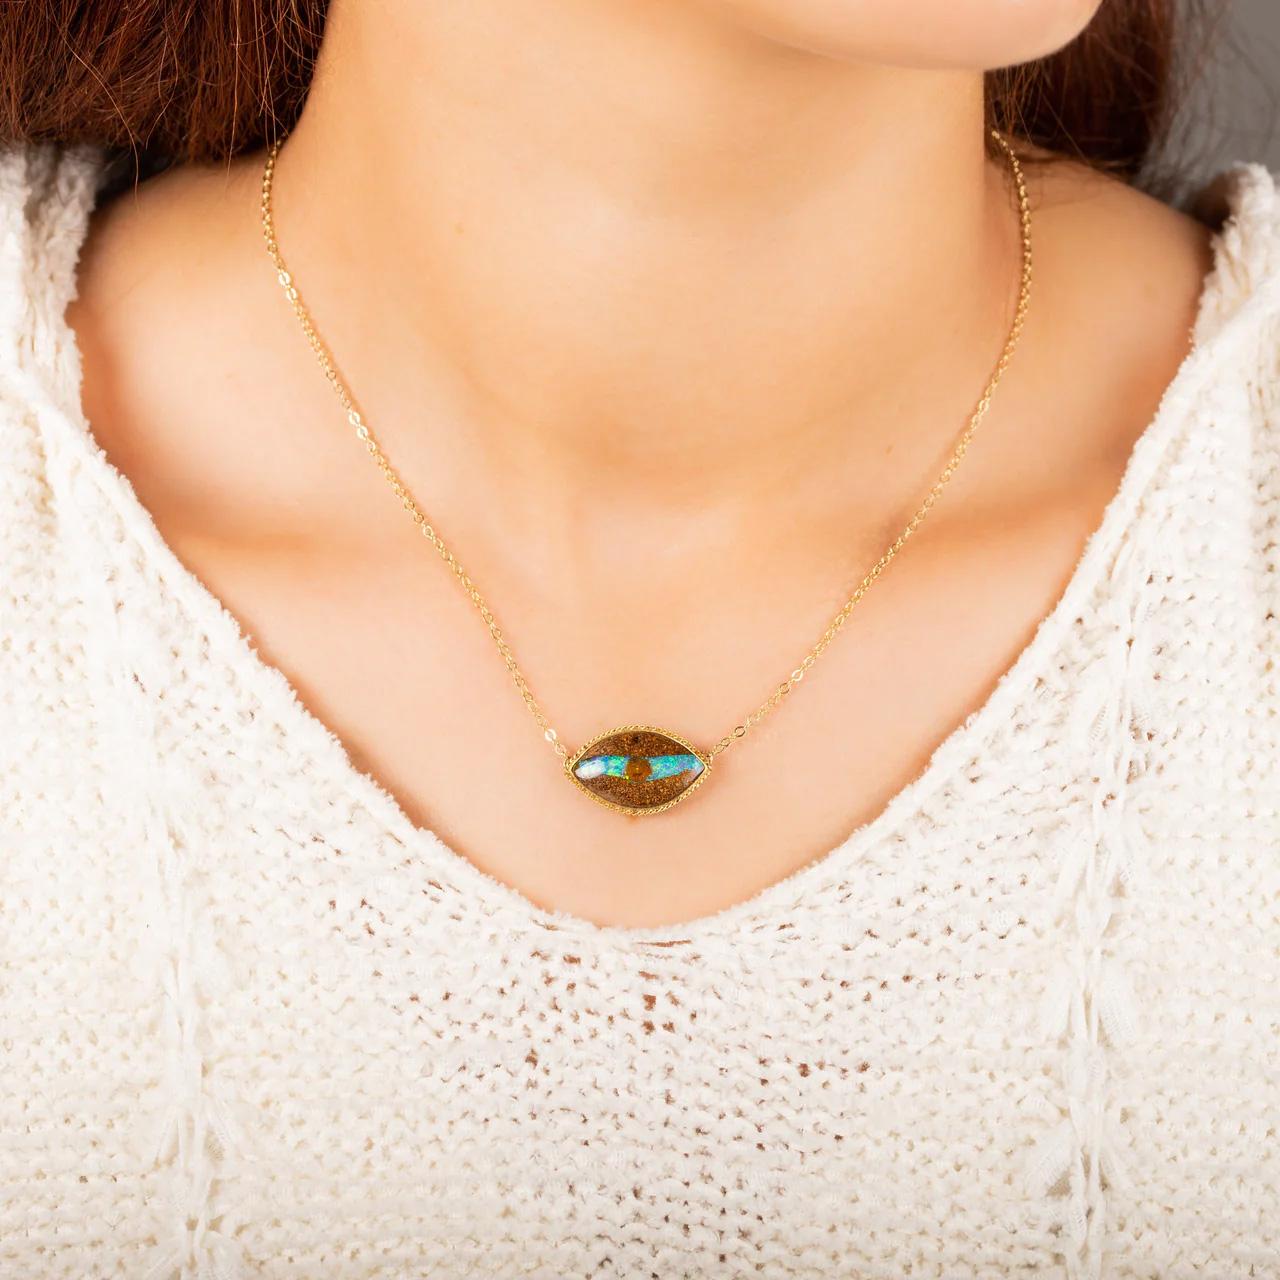 Qu'allez-vous espionner avec votre œil d'opale ? Les côtés sombres et texturés de ce bois opalisé s'écartent pour révéler une bande d'iridescence bleue et verte électrique bissectée par un cercle plus sombre, un effet naturel qui ressemble à une